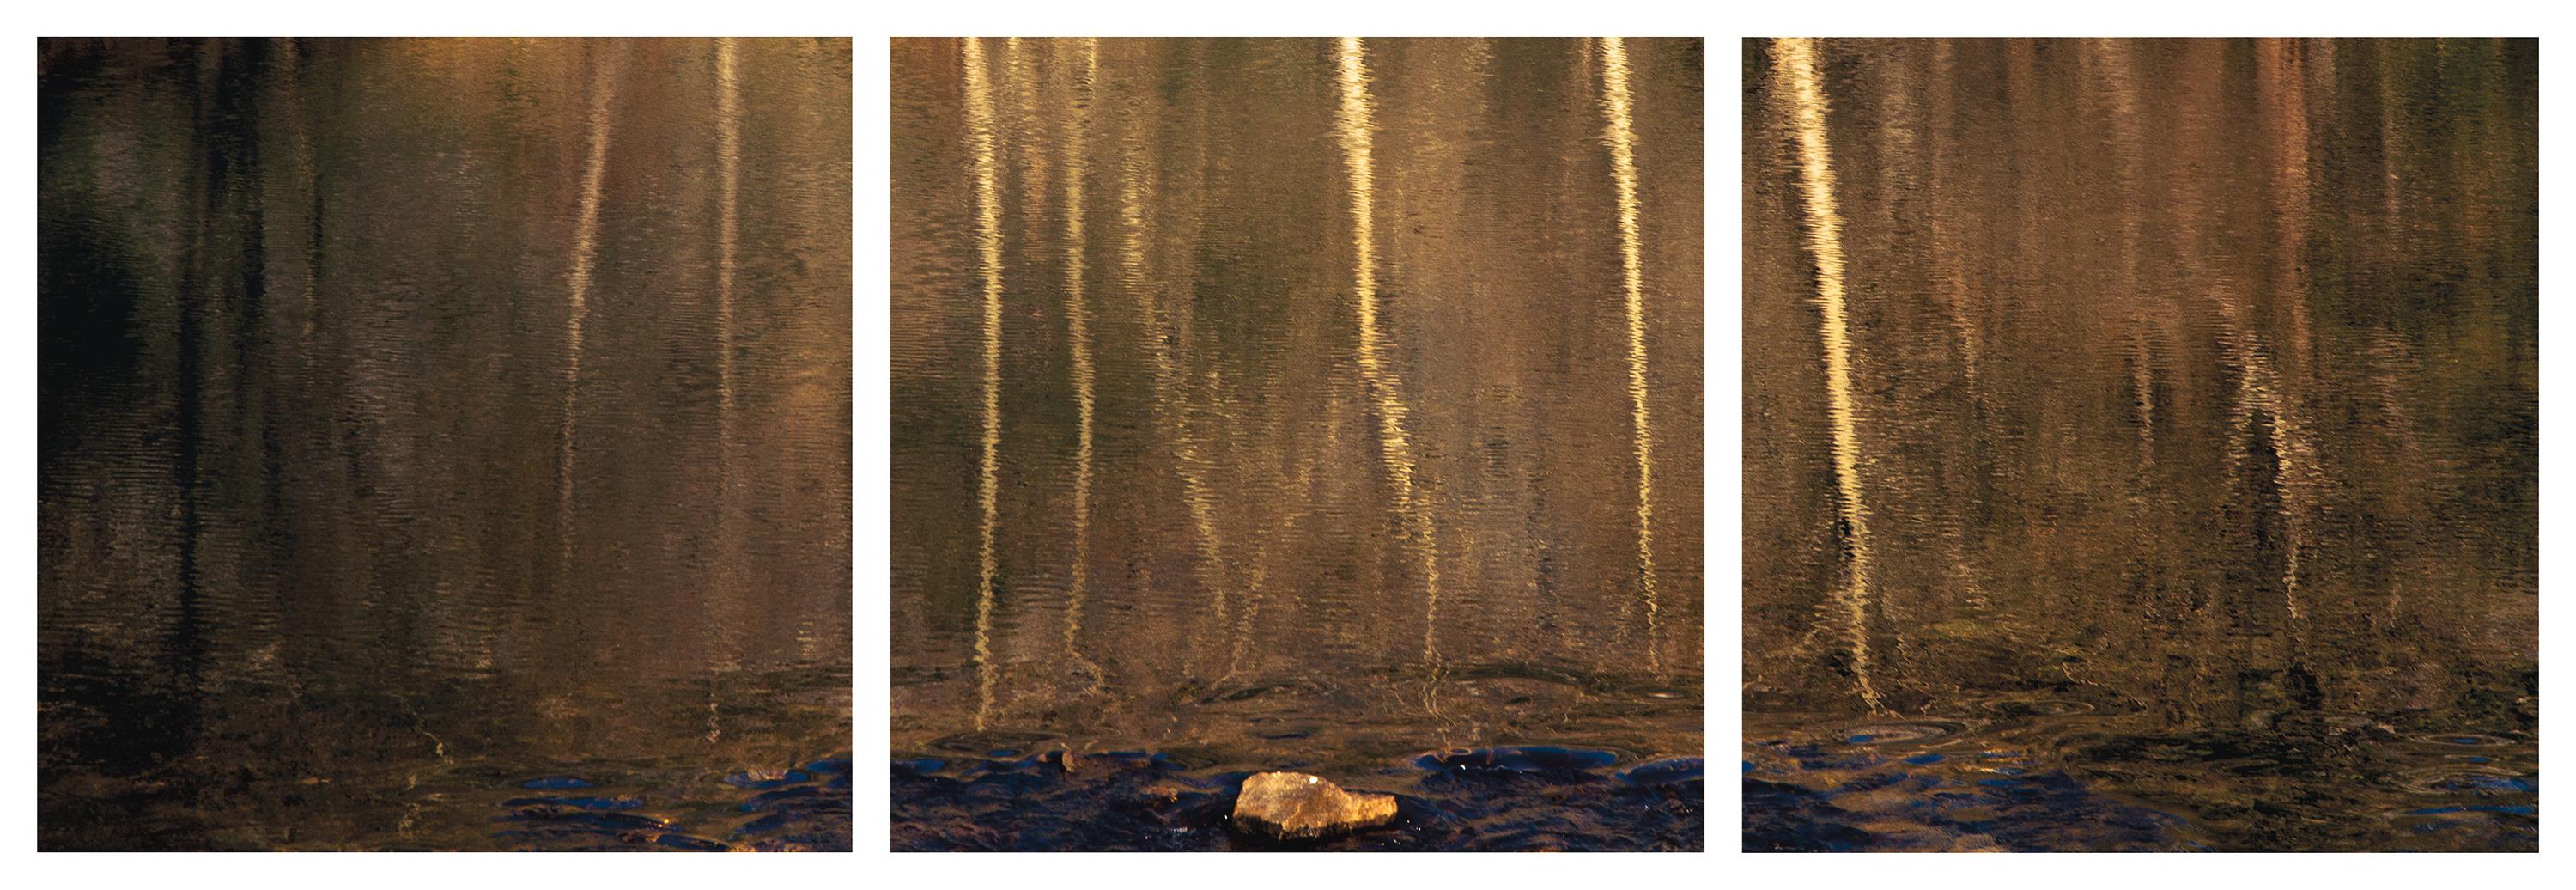 Wa-Kal-La" Fotografisches Triptychon Yosemite Wasser Wood Tree Stone Nature Gold 